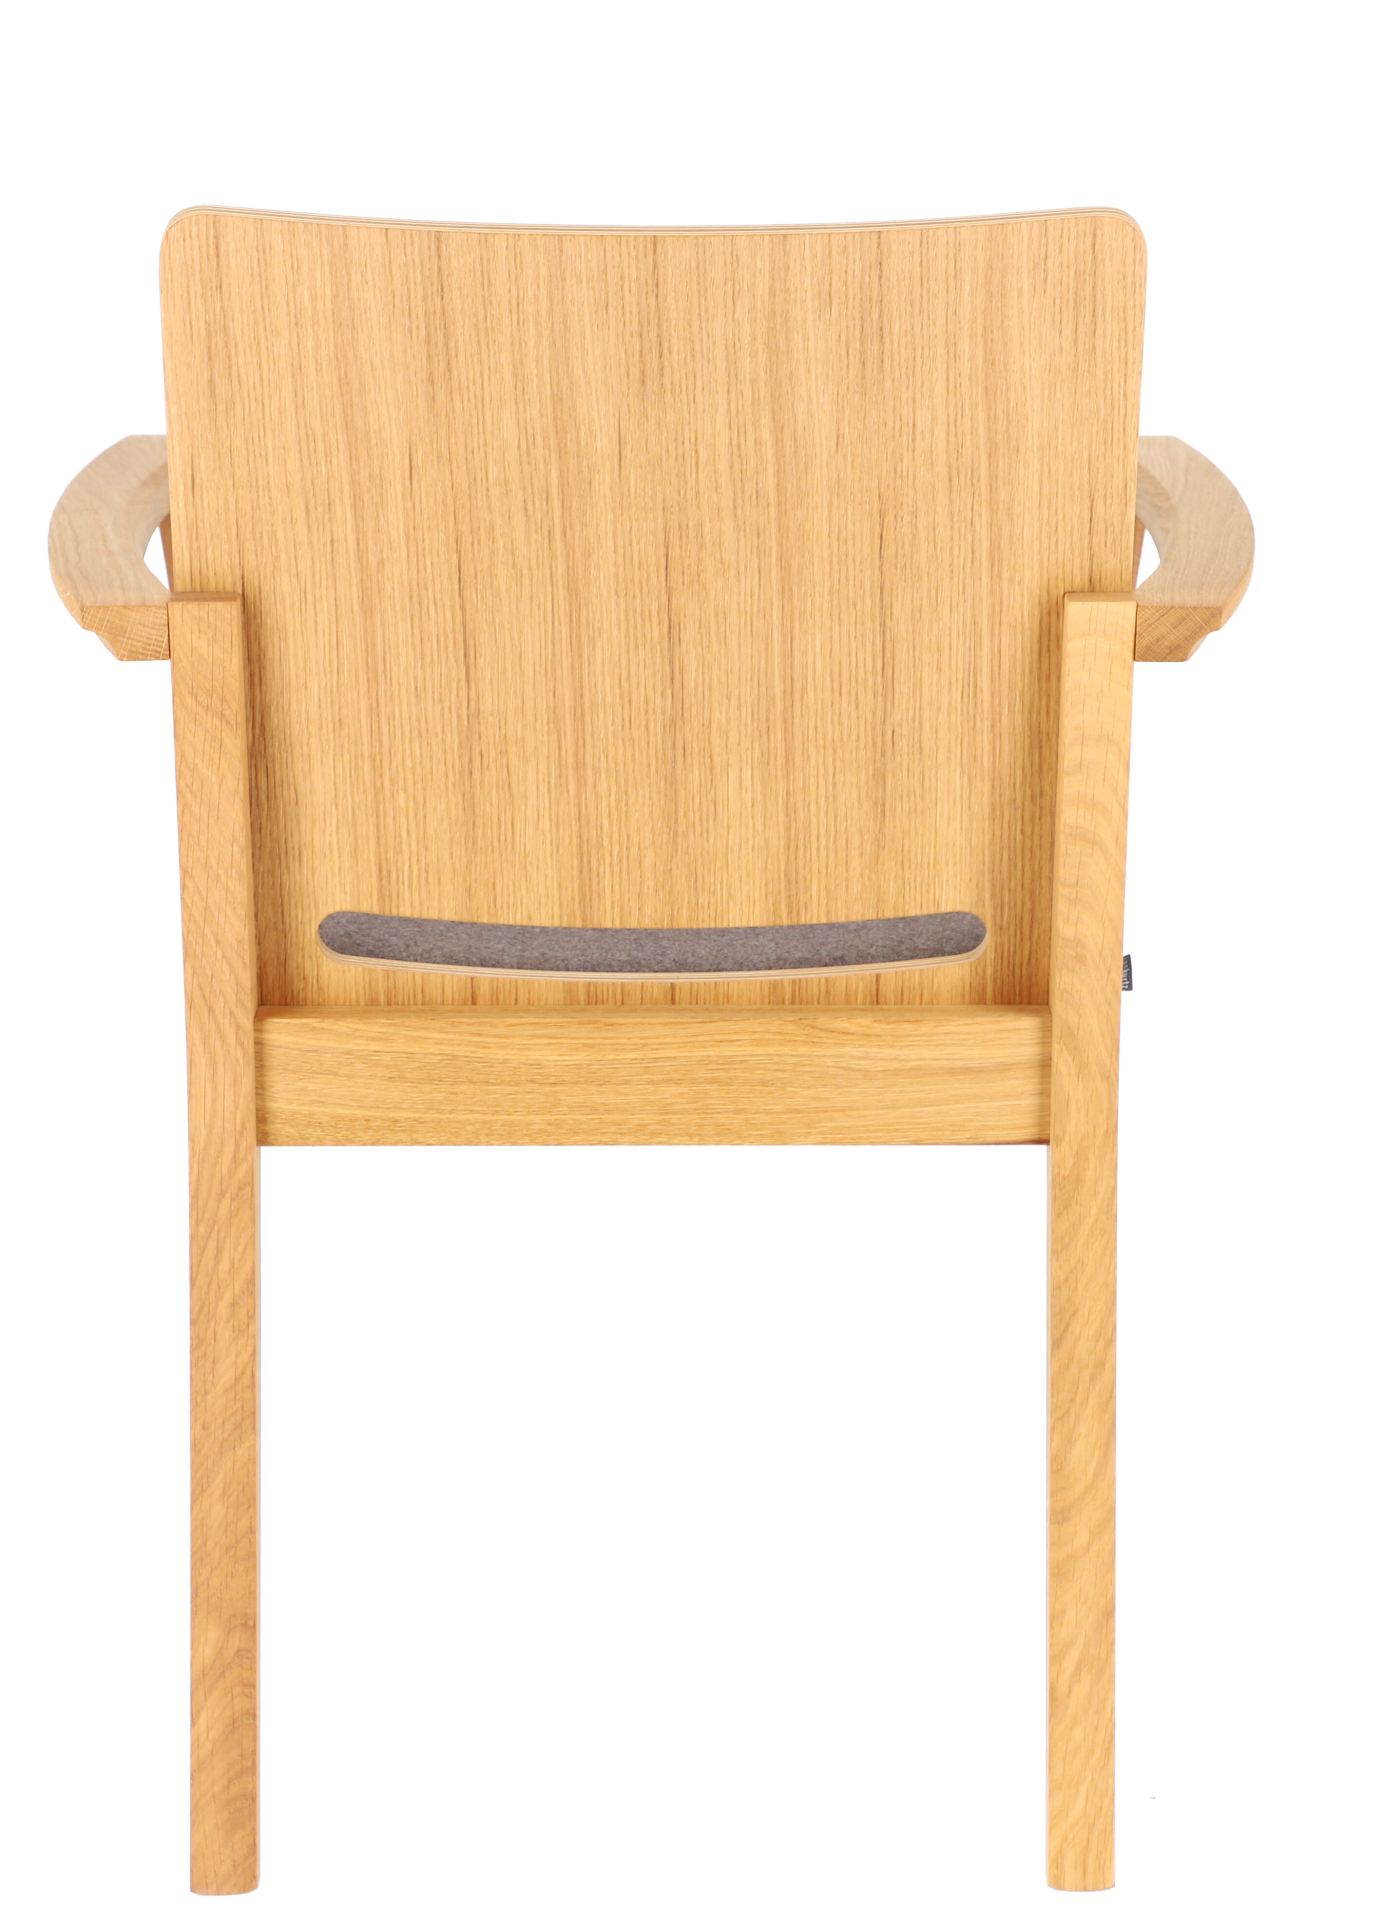 Der Esszimmerstuhl Kelley wurde aus massiver Eiche gefertigt, die Sitzfläche wurde aus Wolle hergestellt. Durch die Armlehnen wird der Tisch nur noch bequemer. Designet wurde der Tisch von der Marke Jan Kurtz.